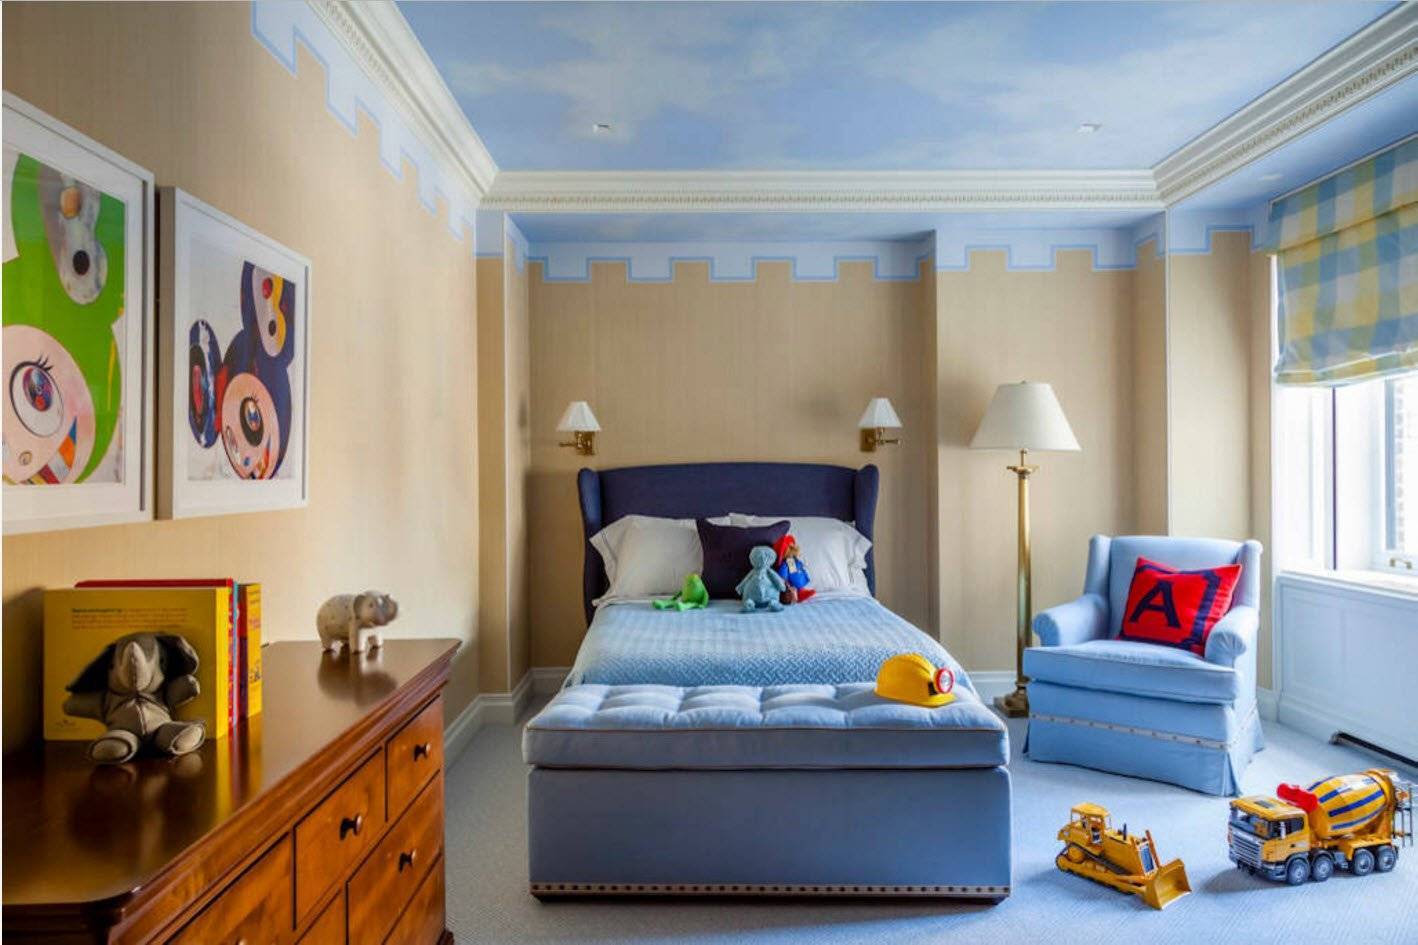 Голубой потолок в интерьере: какие стены сделать, какие обои подойдут к голубому натяжному потолку, как сочетаются, дизайн комнаты